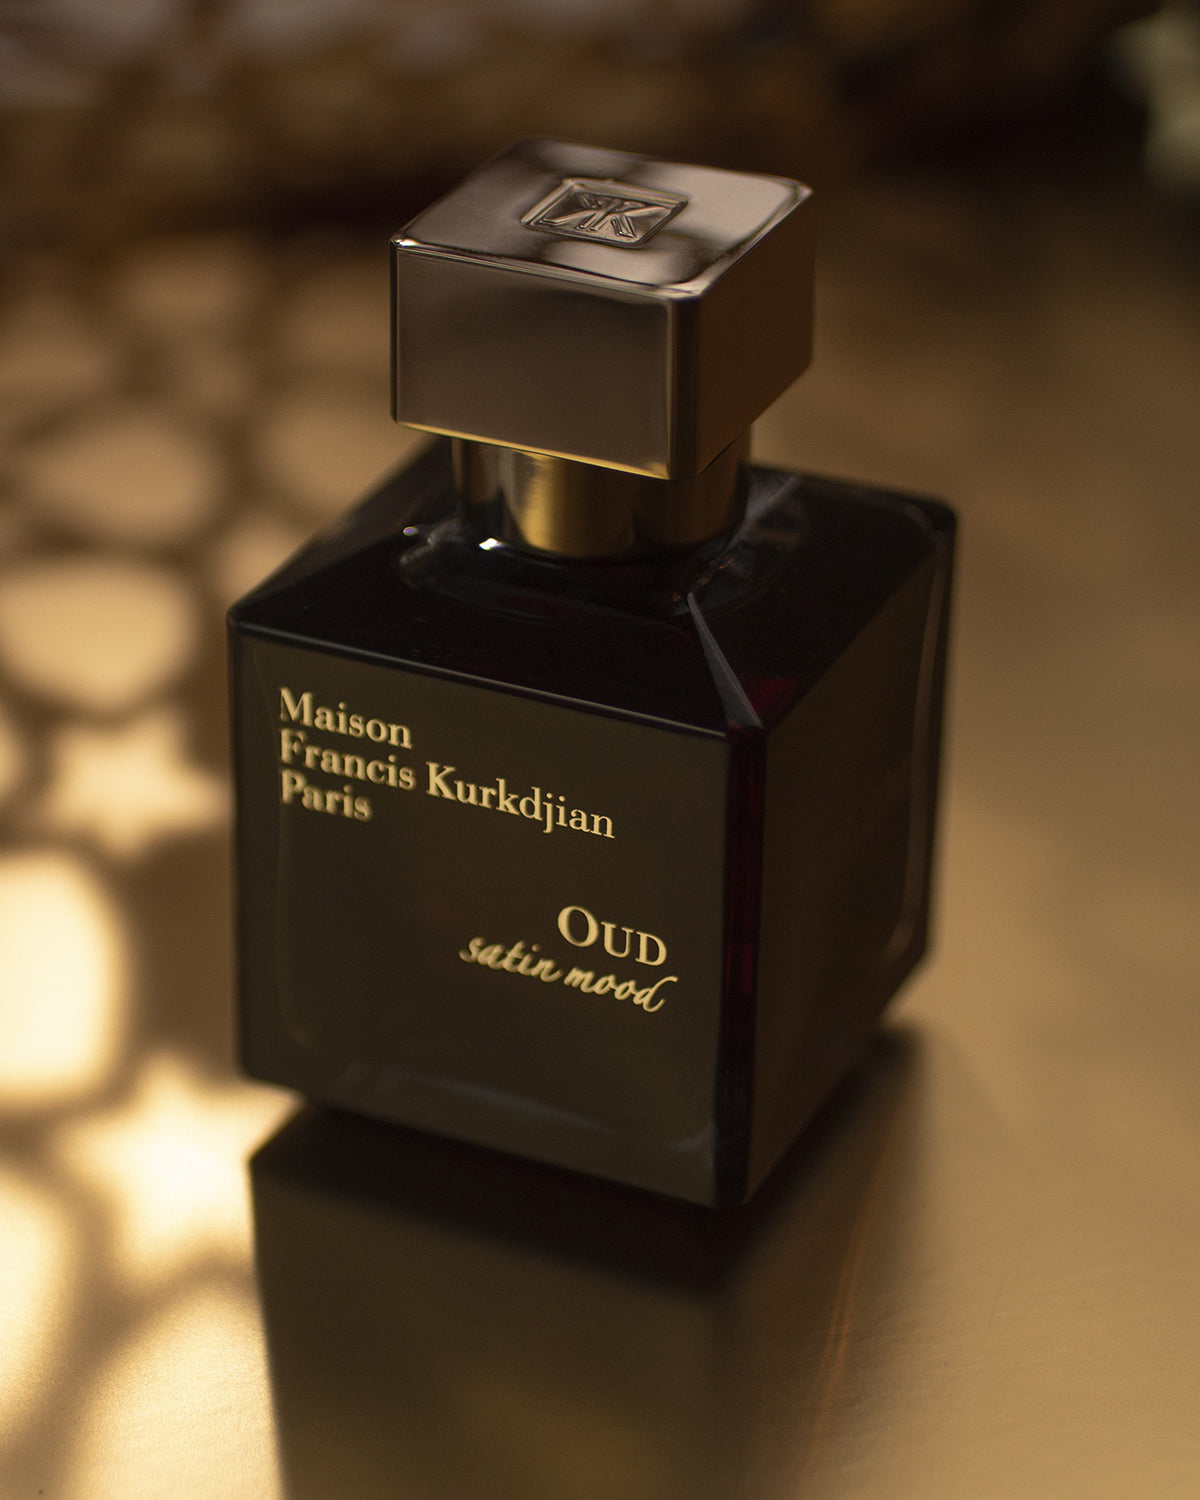 Oud Satin Mood Eau de Parfum